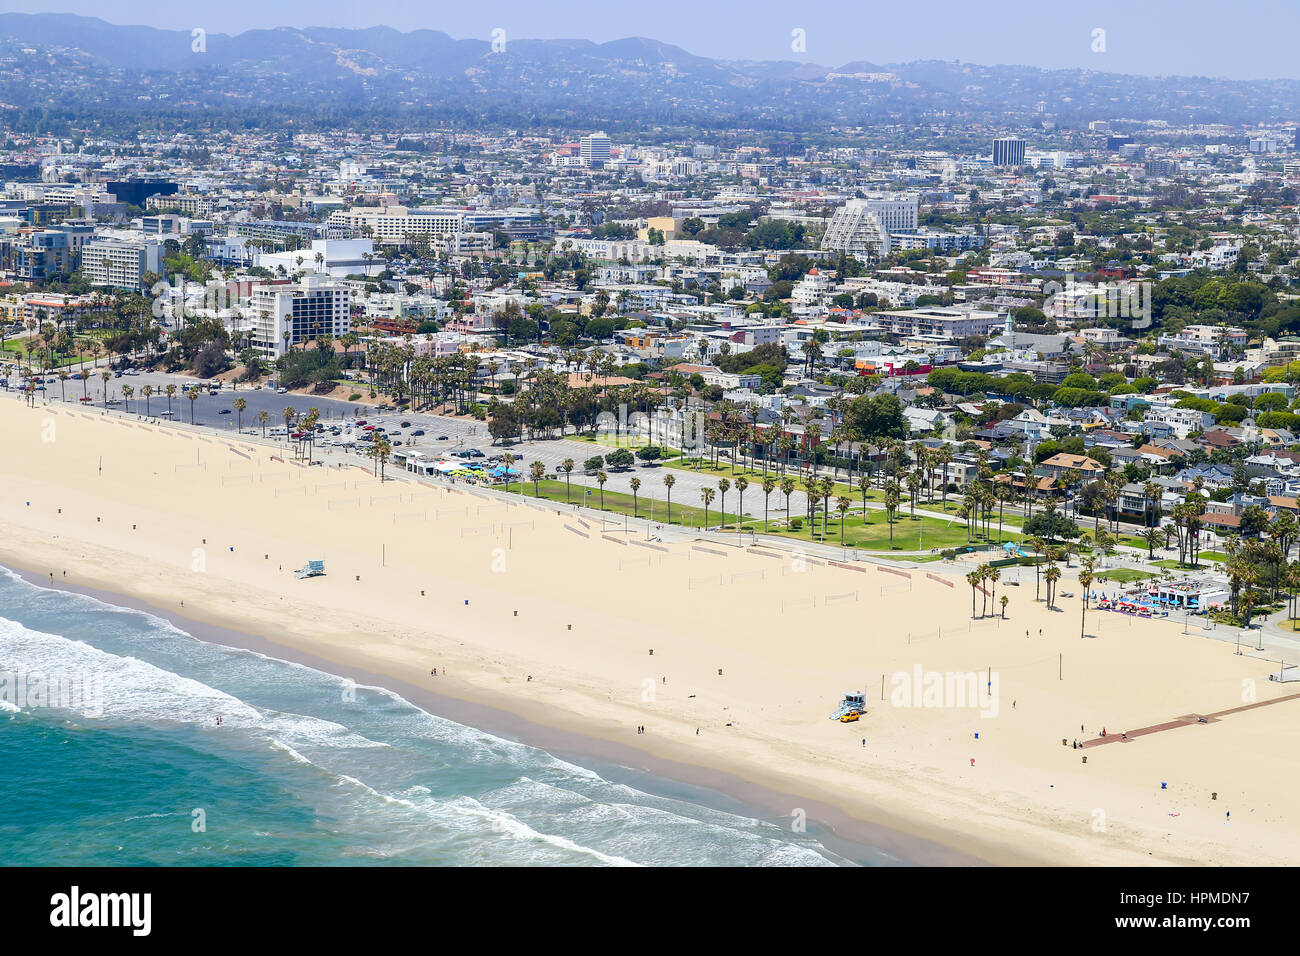 Los Angeles, USA - 27. Mai 2015: Luftaufnahme eines Teils von Venice Beach mit kaum Leute am Strand und im Meer. Stockfoto